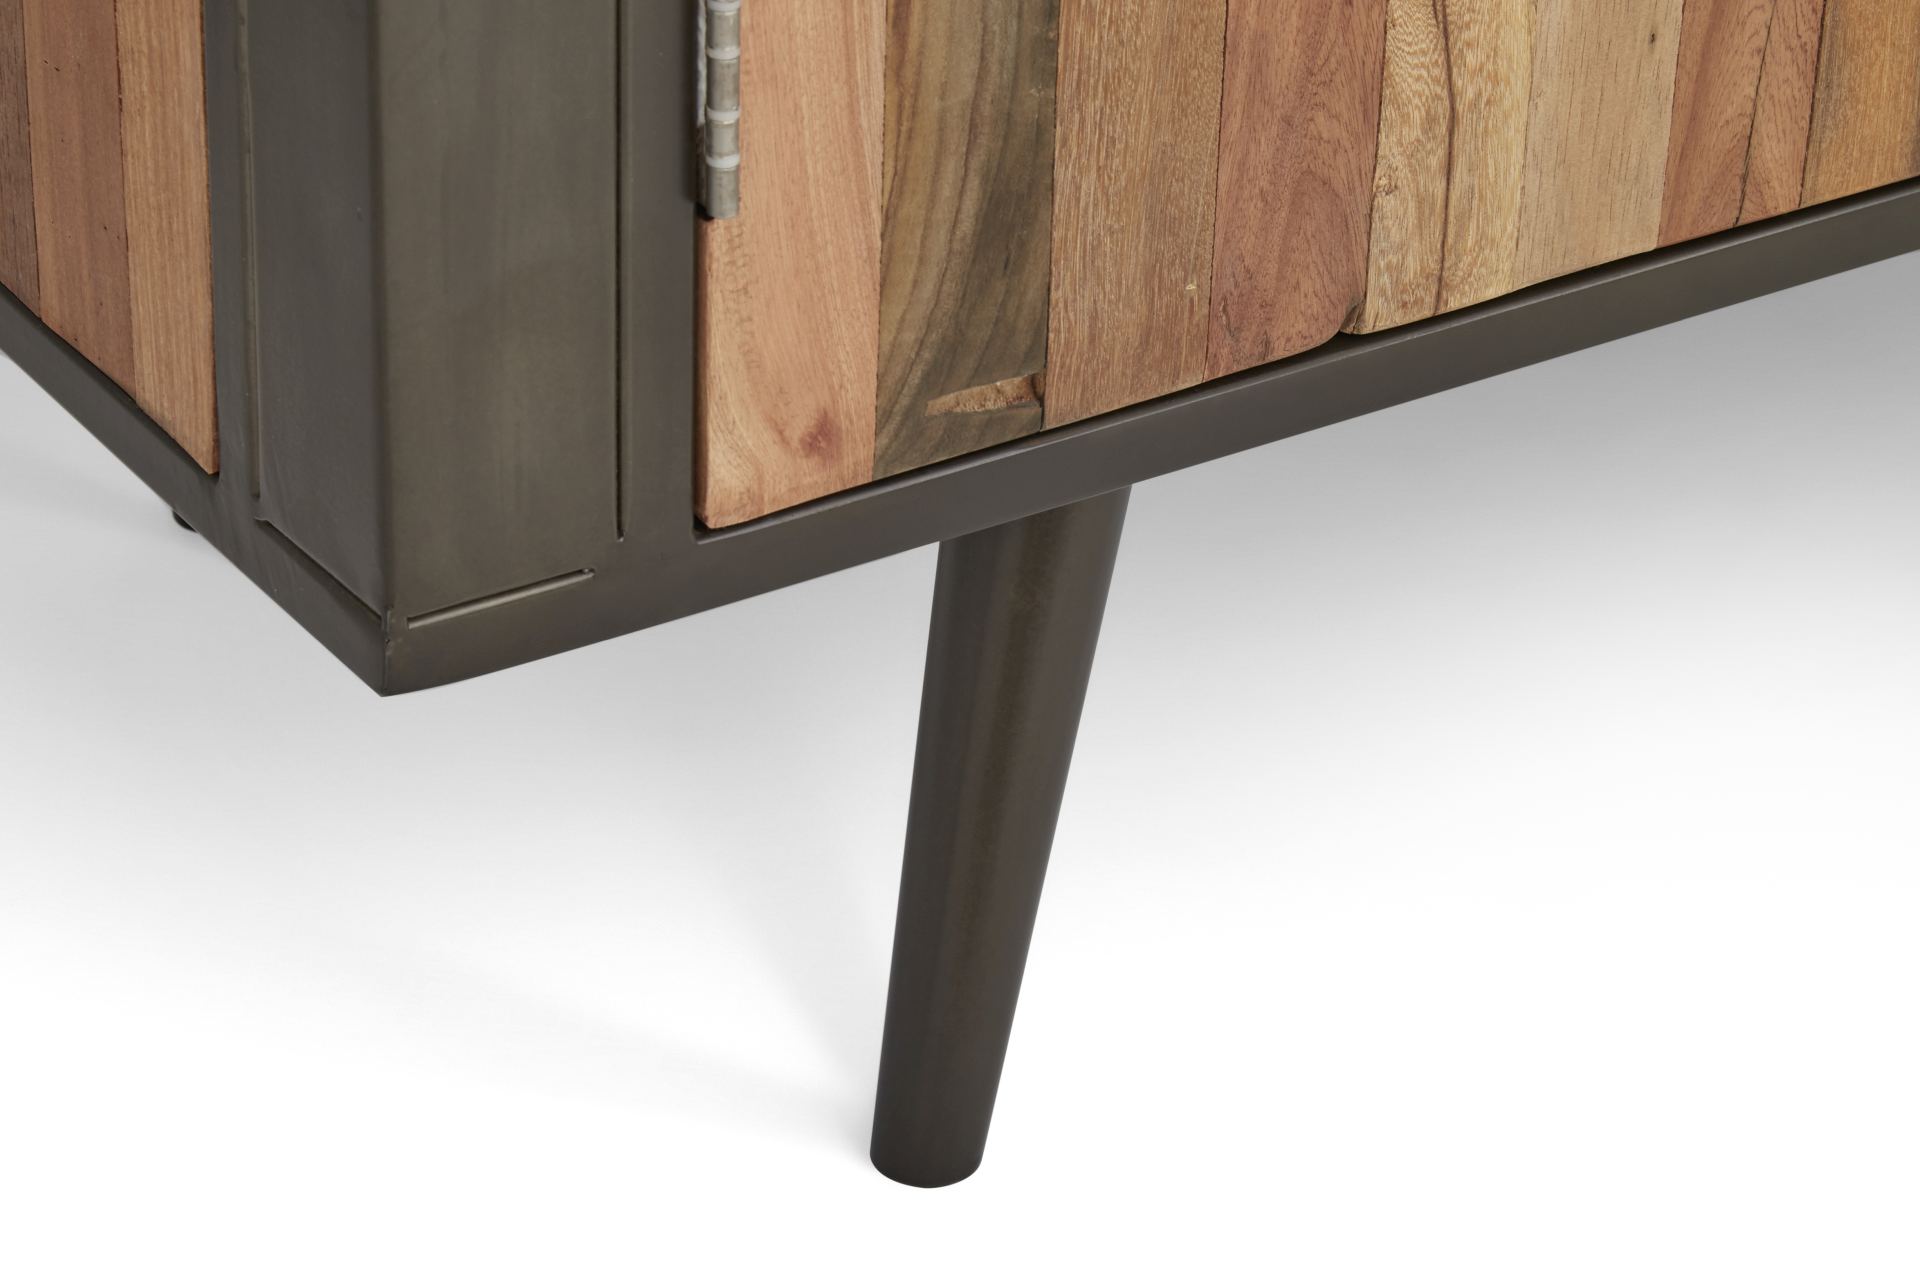 Das TV-Board Nordic überzeugt mit seinem Industriellen Design. Gefertigt wurde es aus Recyceltem Boots Holz, welches einen natürlichen Farbton besitzt. Das Gestell ist aus Metall und hat eine Anthrazit Farbe. Das TV-Board verfügt über vier Türen. Die Brei